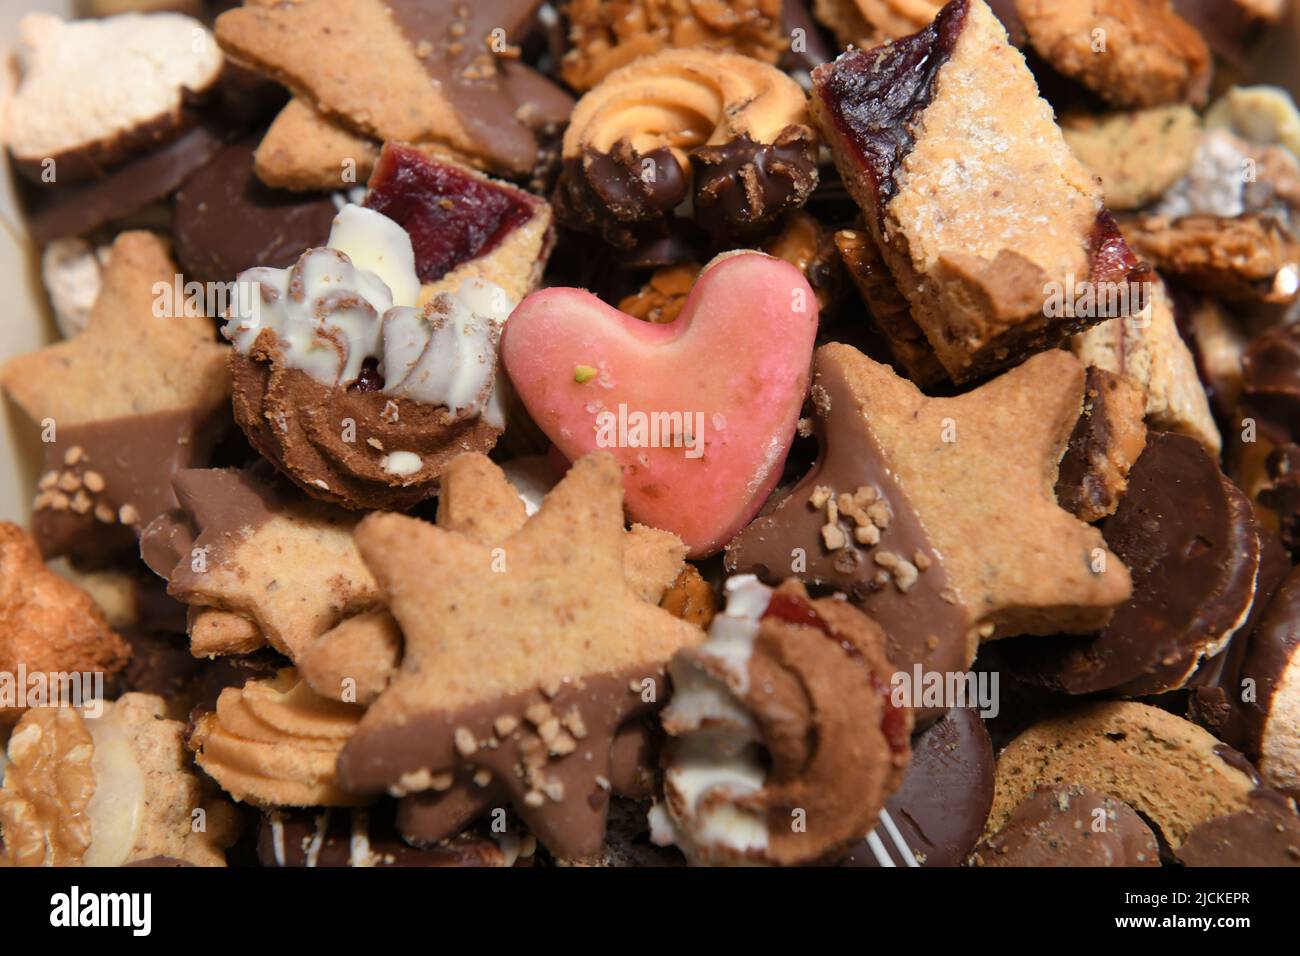 Nahaufnahme von verschiedenen Weihnachtskeksen - Close up of various Christmas cookies Stock Photo